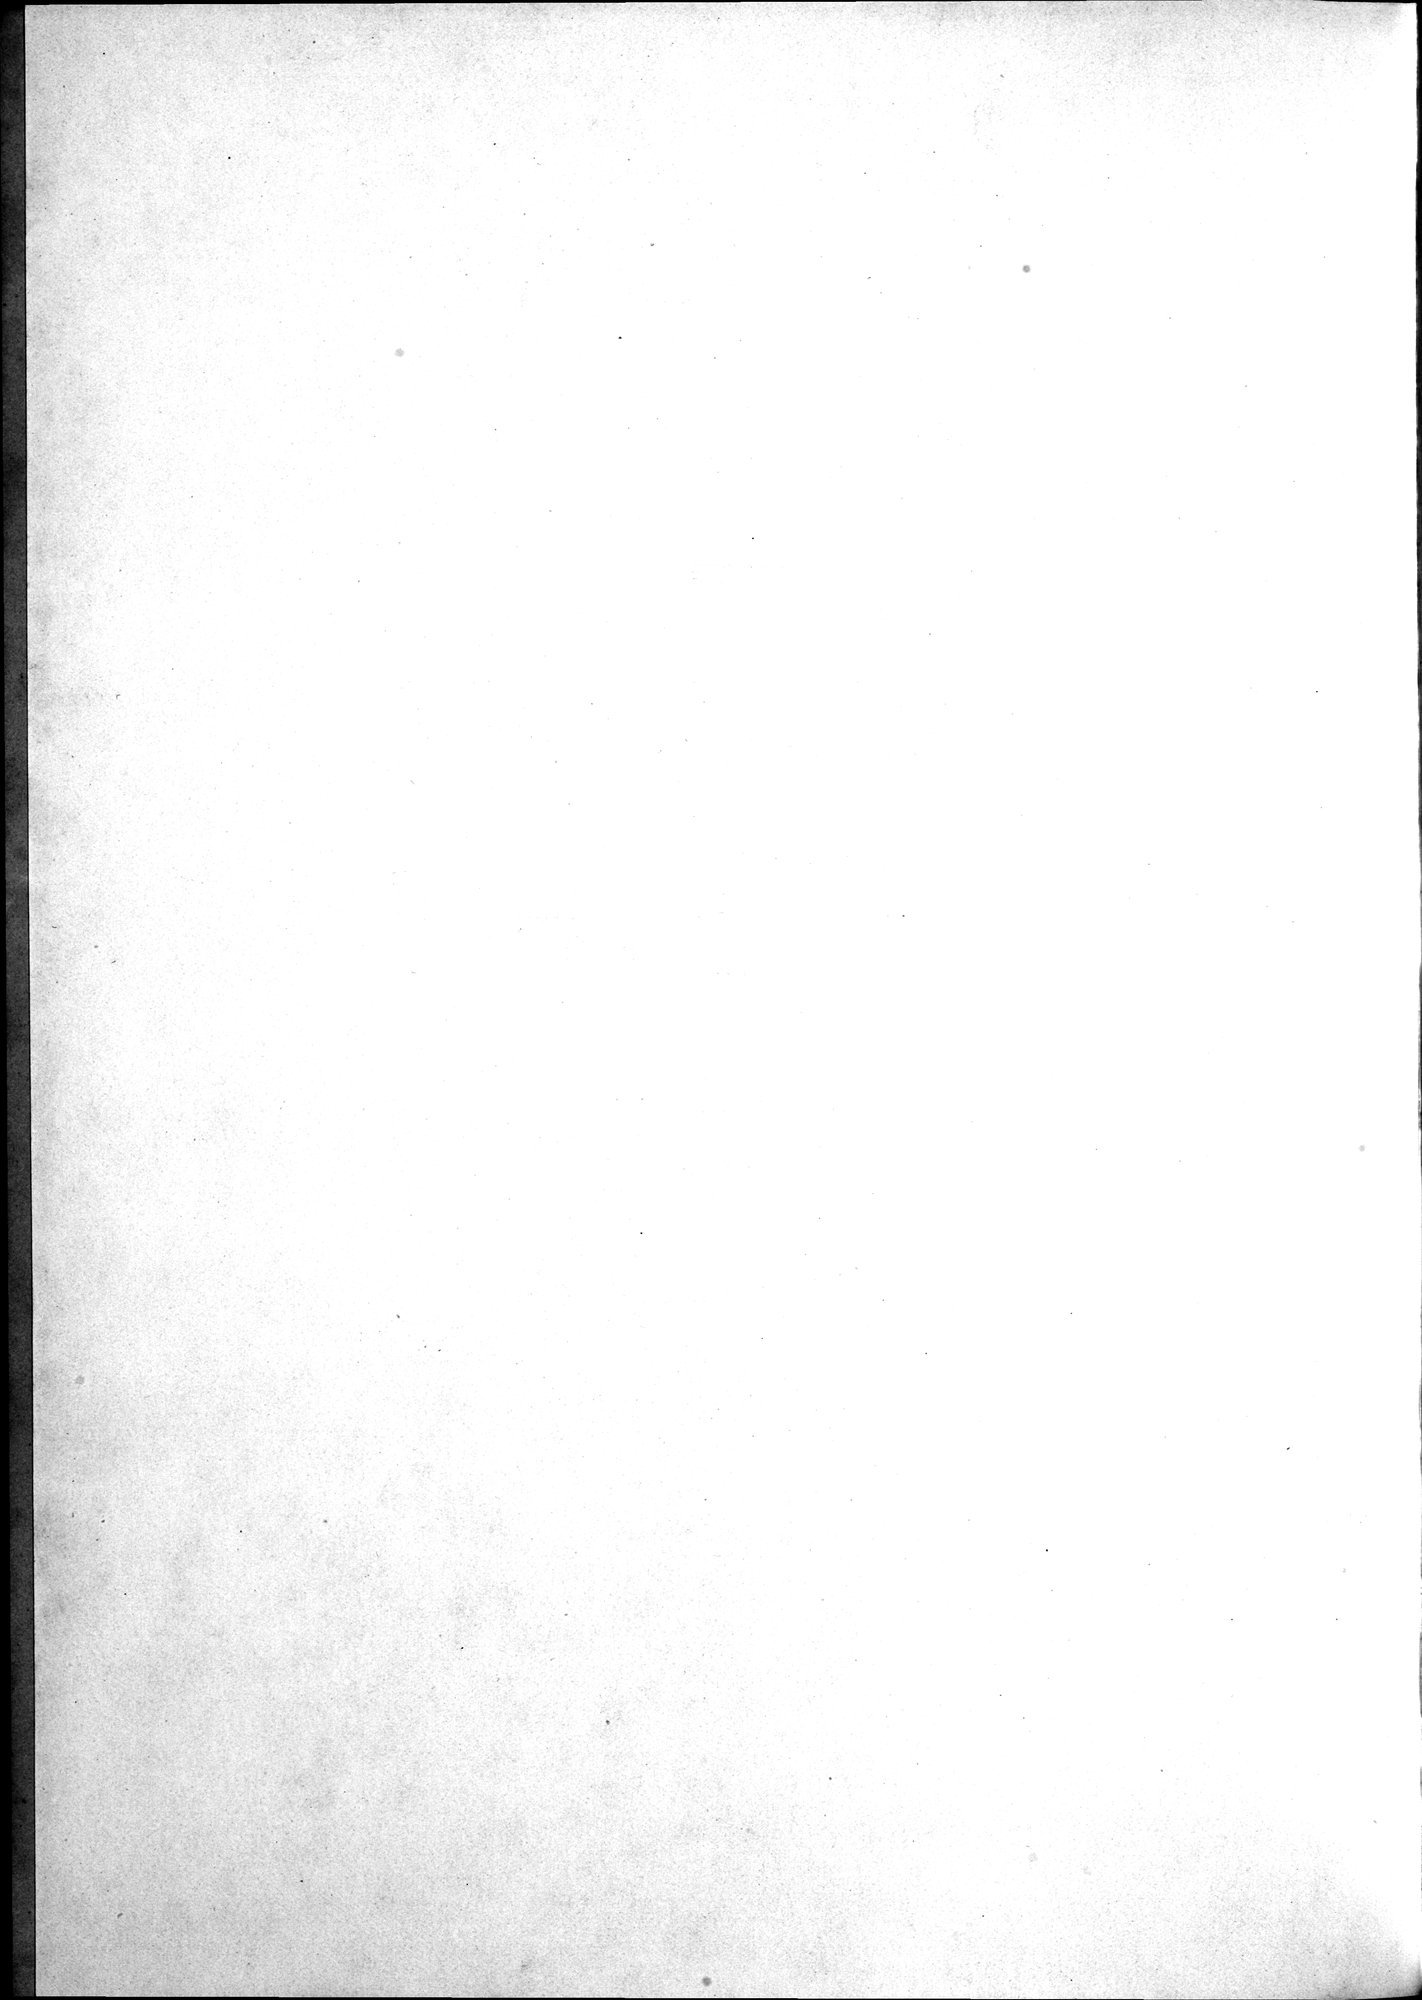 Kunstgeschichte der Seidenweberei : vol.1 / Page 8 (Grayscale High Resolution Image)